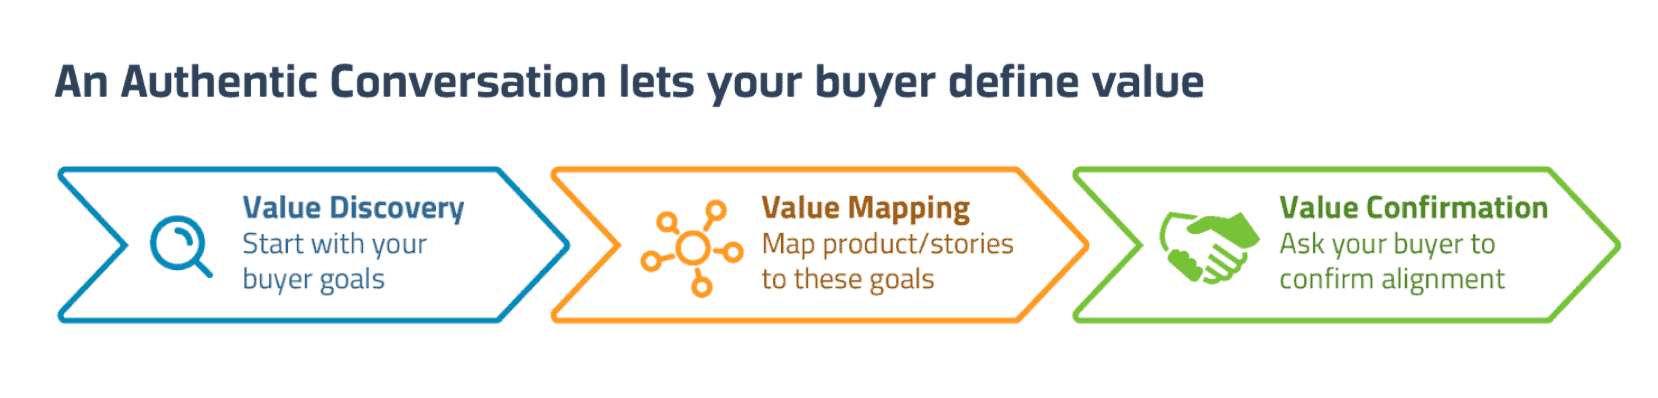 An Authentic Conversation lets your buyer define value